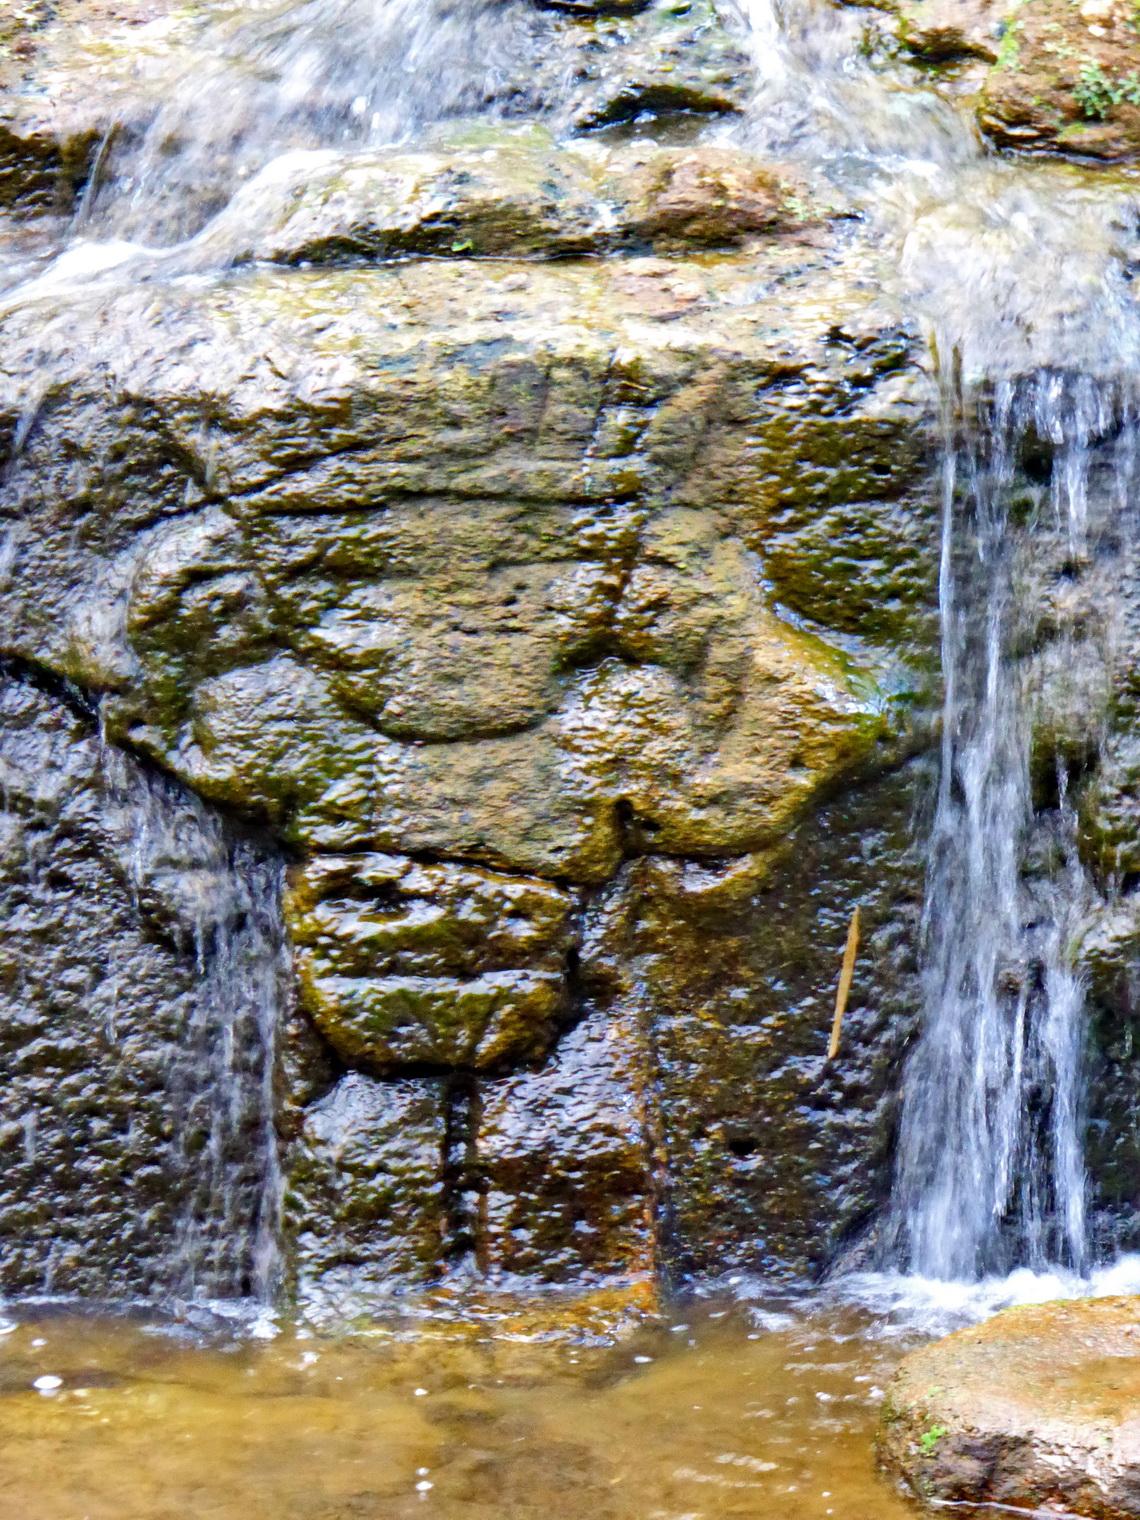 Labyrinth Fuente de Lavapas with channels and little basins in the park Parque Arqueologico of San Agustin